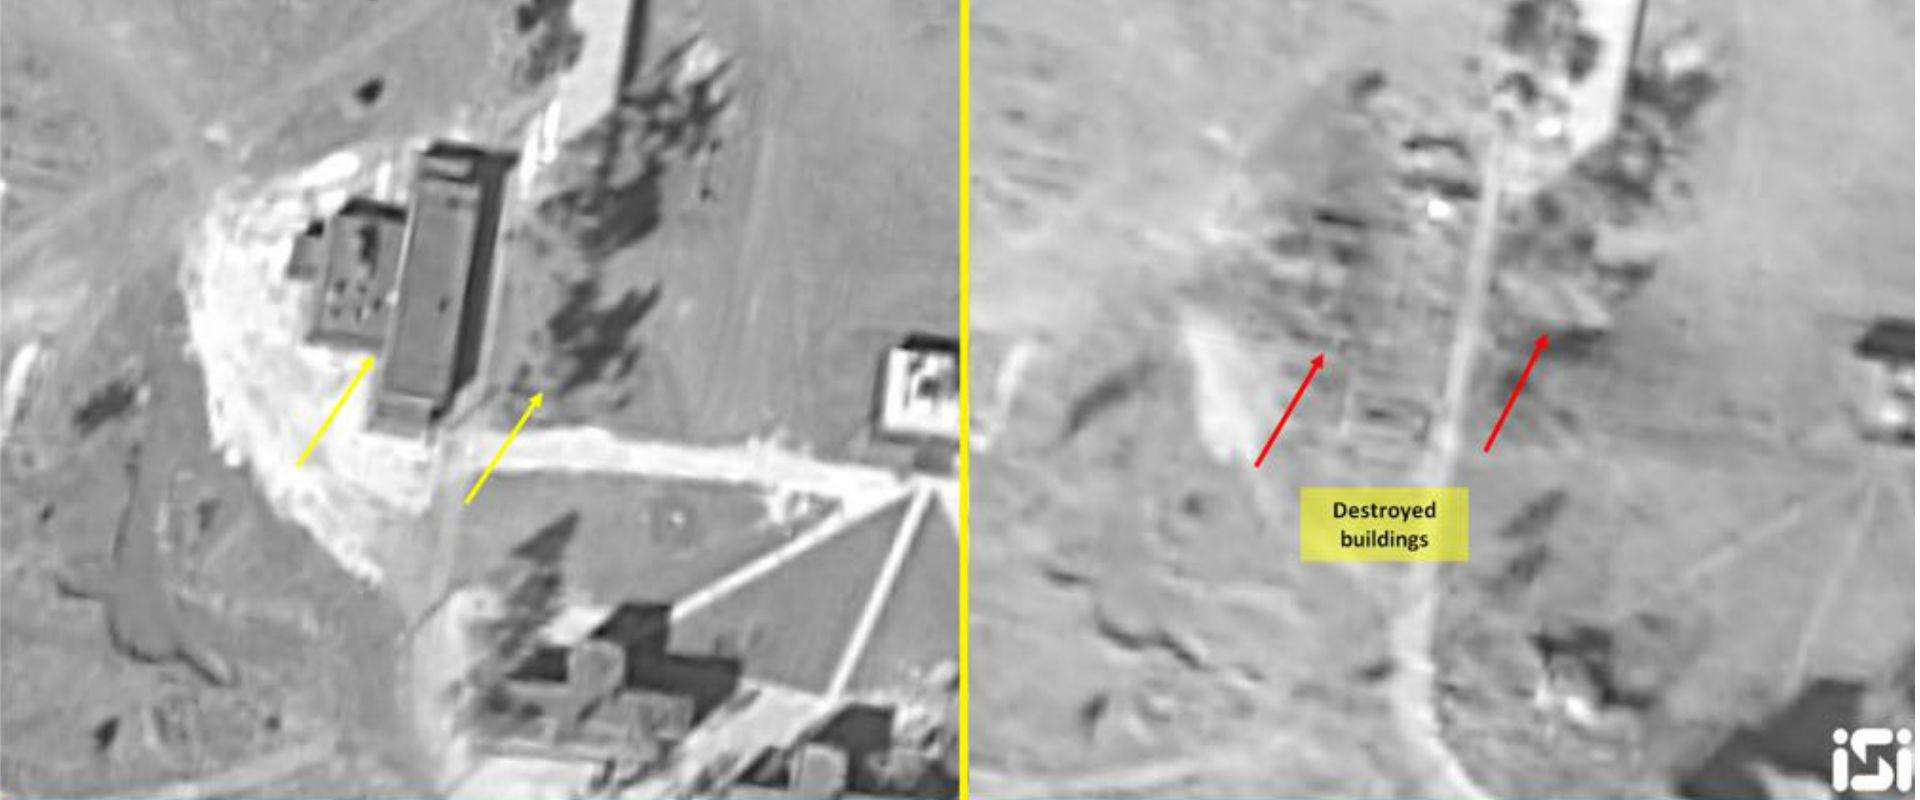 הבסיס שהותקף בסוריה, לפני ואחרי